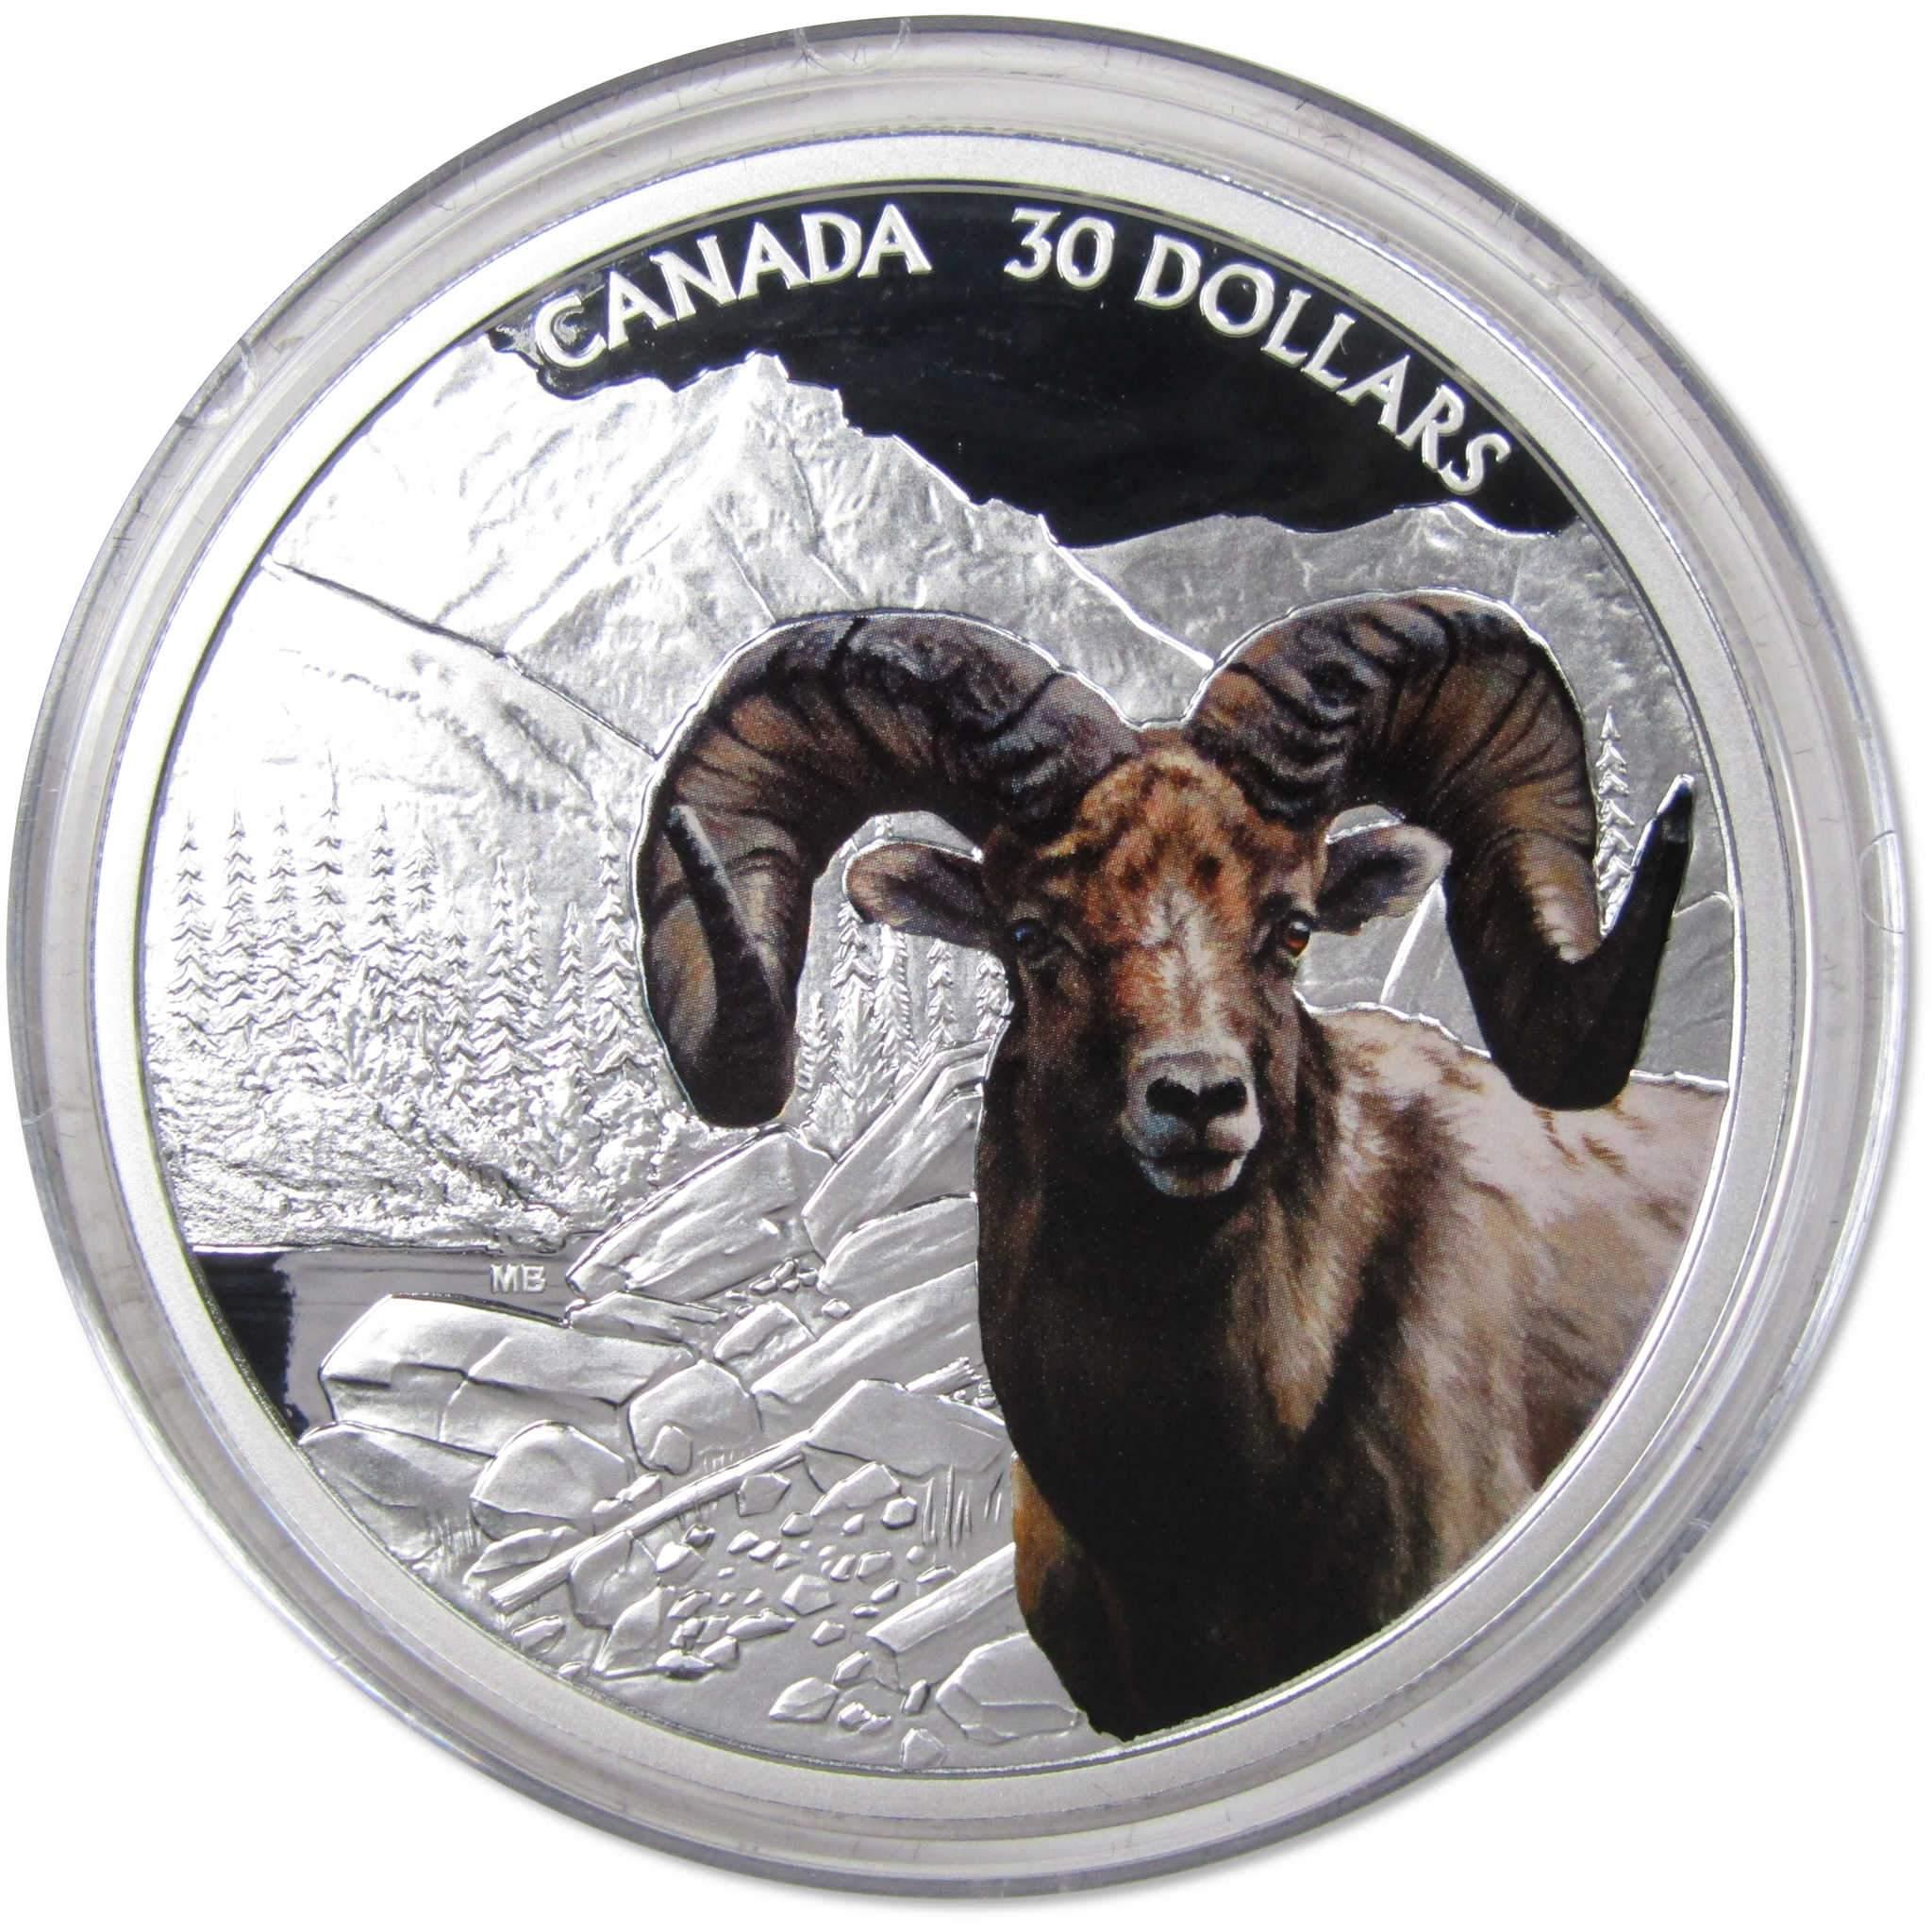 Bighorn Sheep $30 2 oz .9999 Silver $30 Colorized Proof Coin 2020 Canada COA